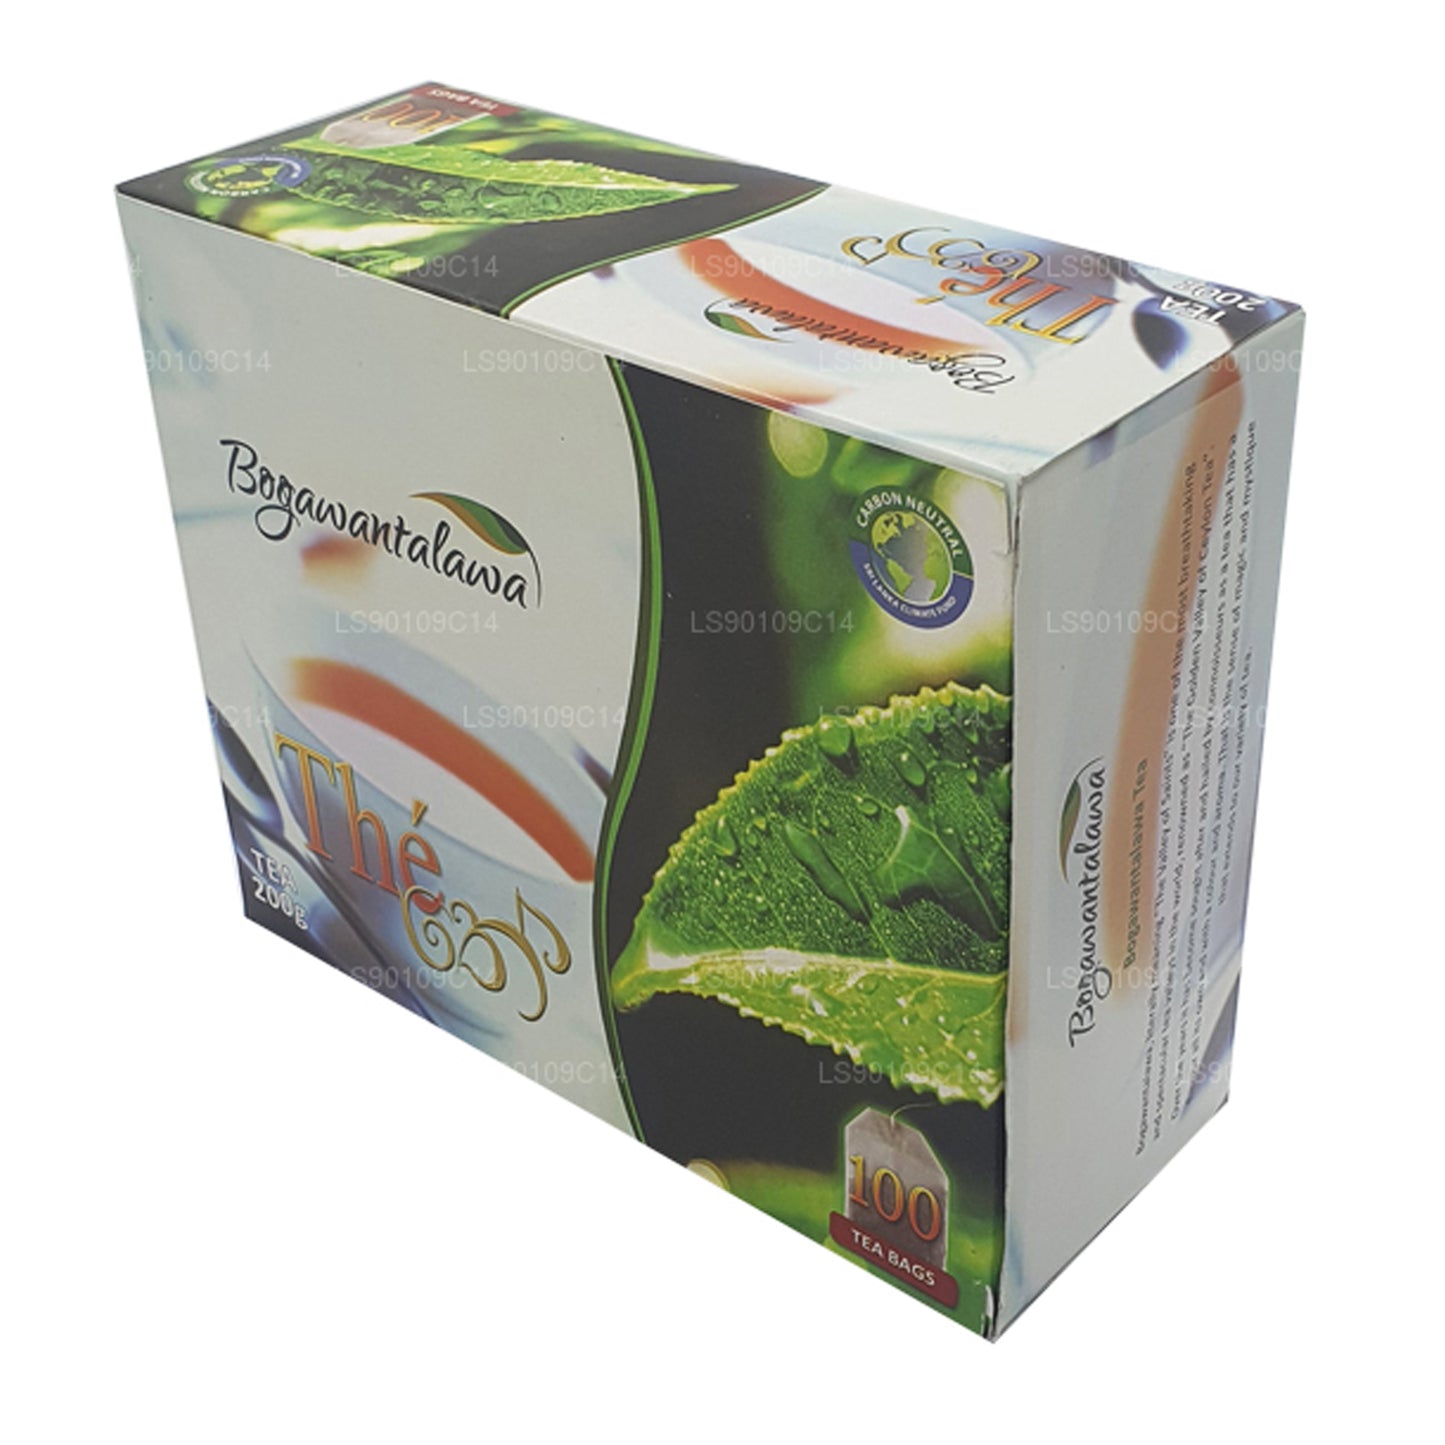 Bogawantalawa Tea (200g) 100 Tea Bags